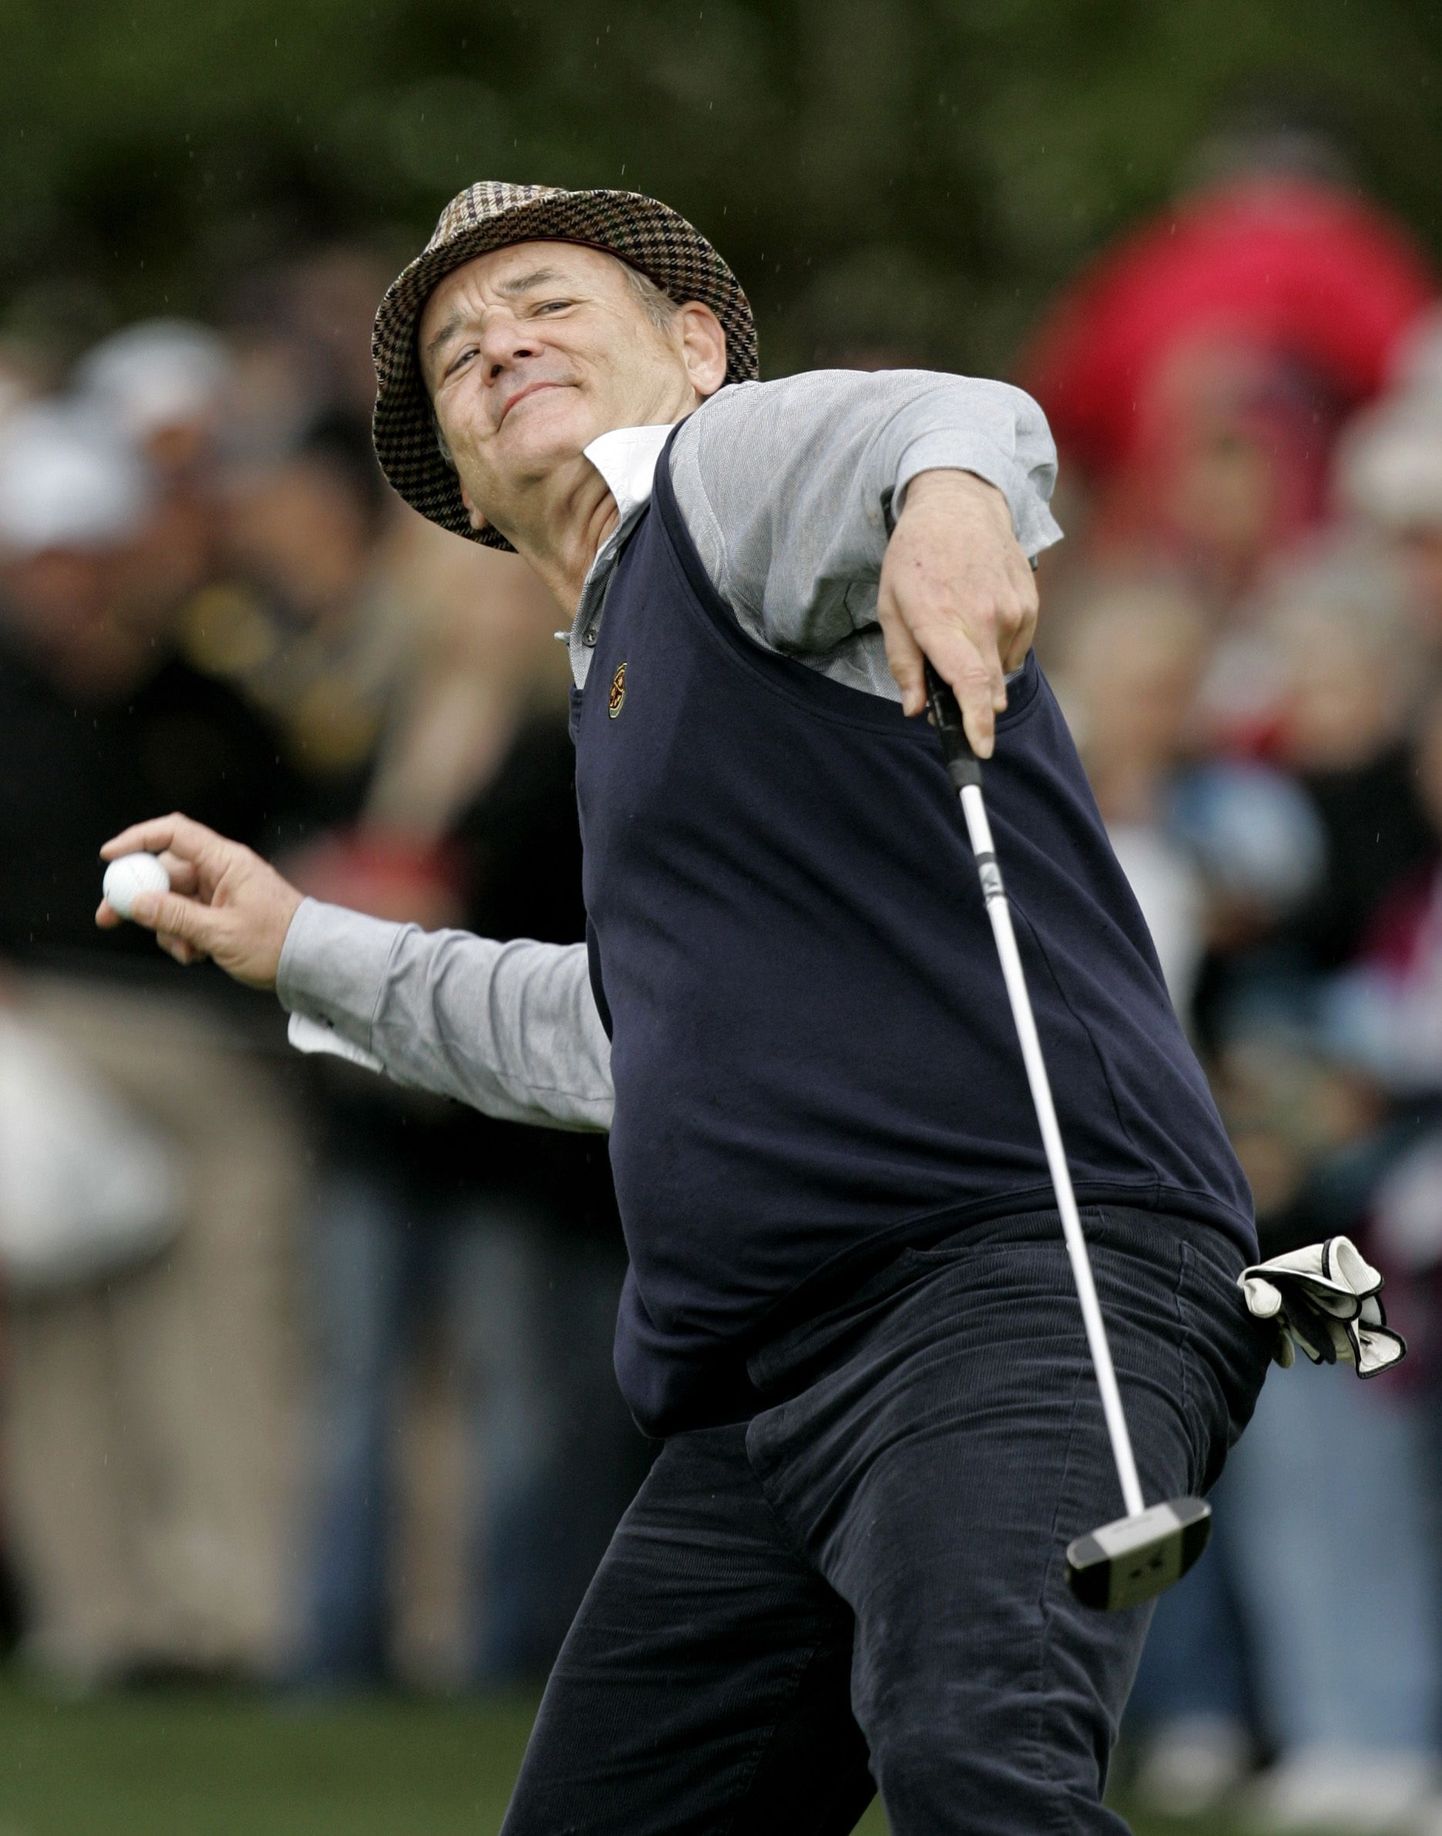 Kümnetes komöödiafilmides üles astunud Bill Murray armastab vabal ajal golfi mängida.